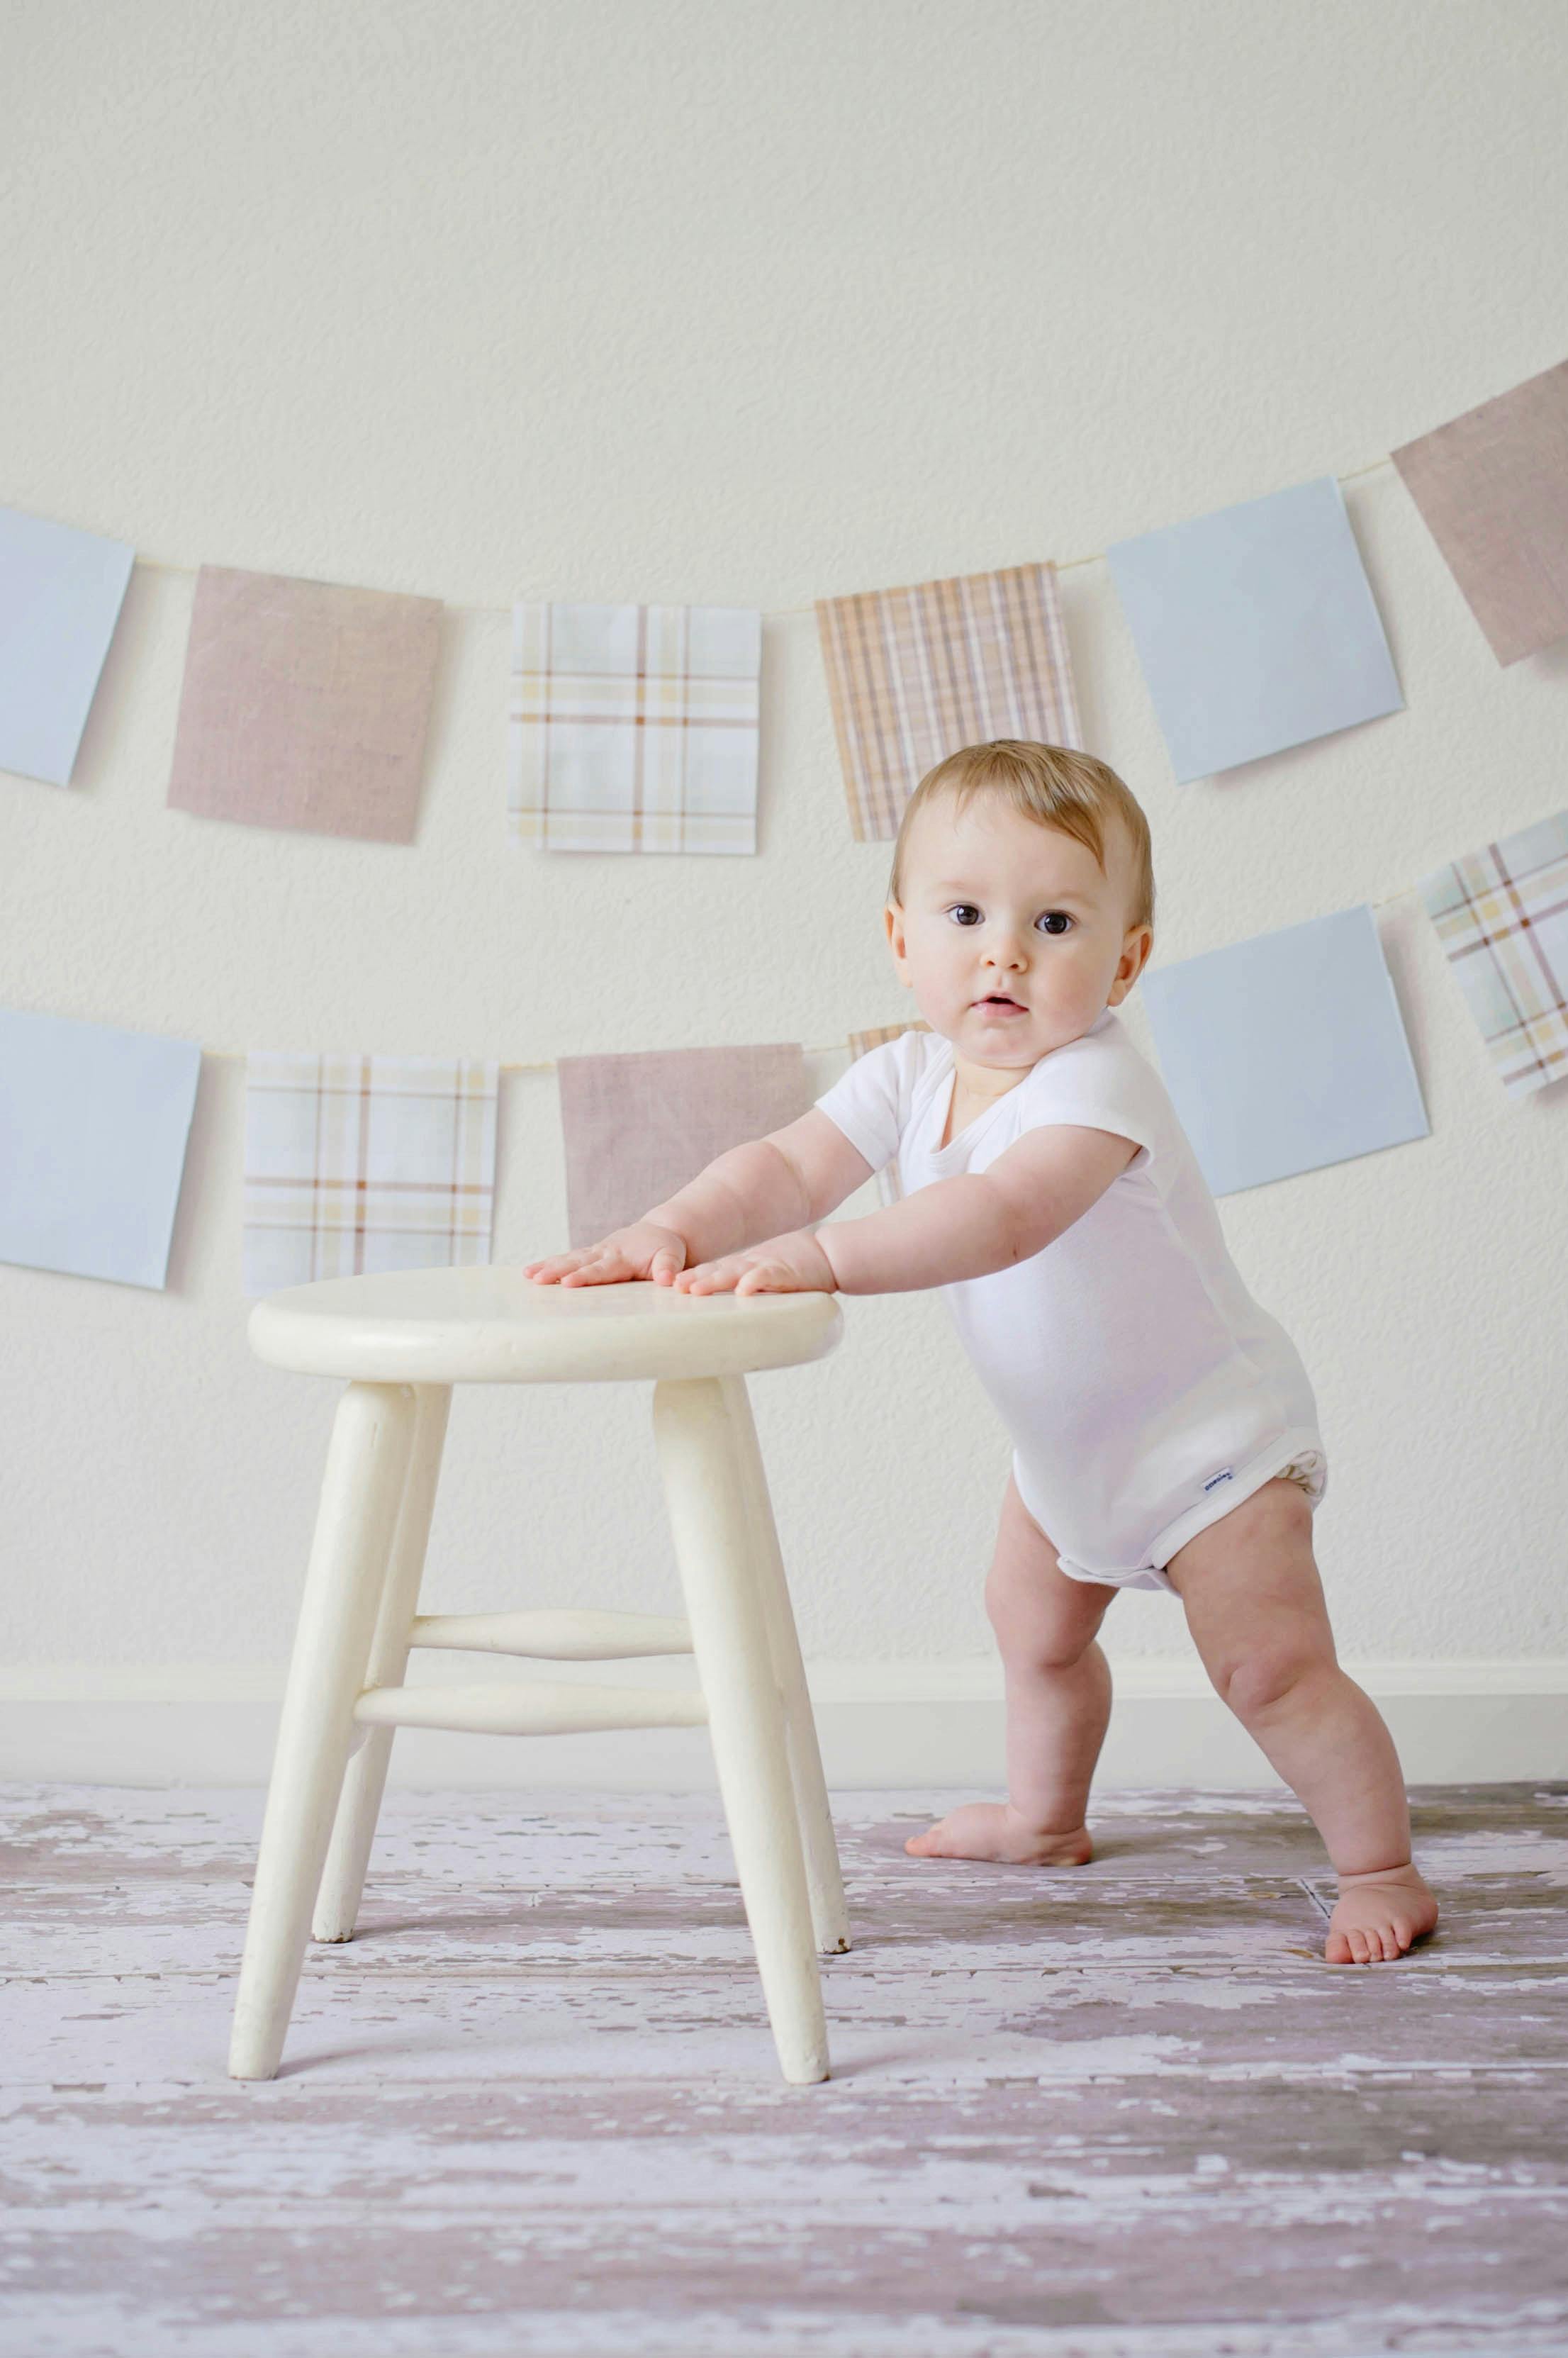 Un bébé qui apprend à se tenir debout à l'aide d'un tabouret | Source : Pexels